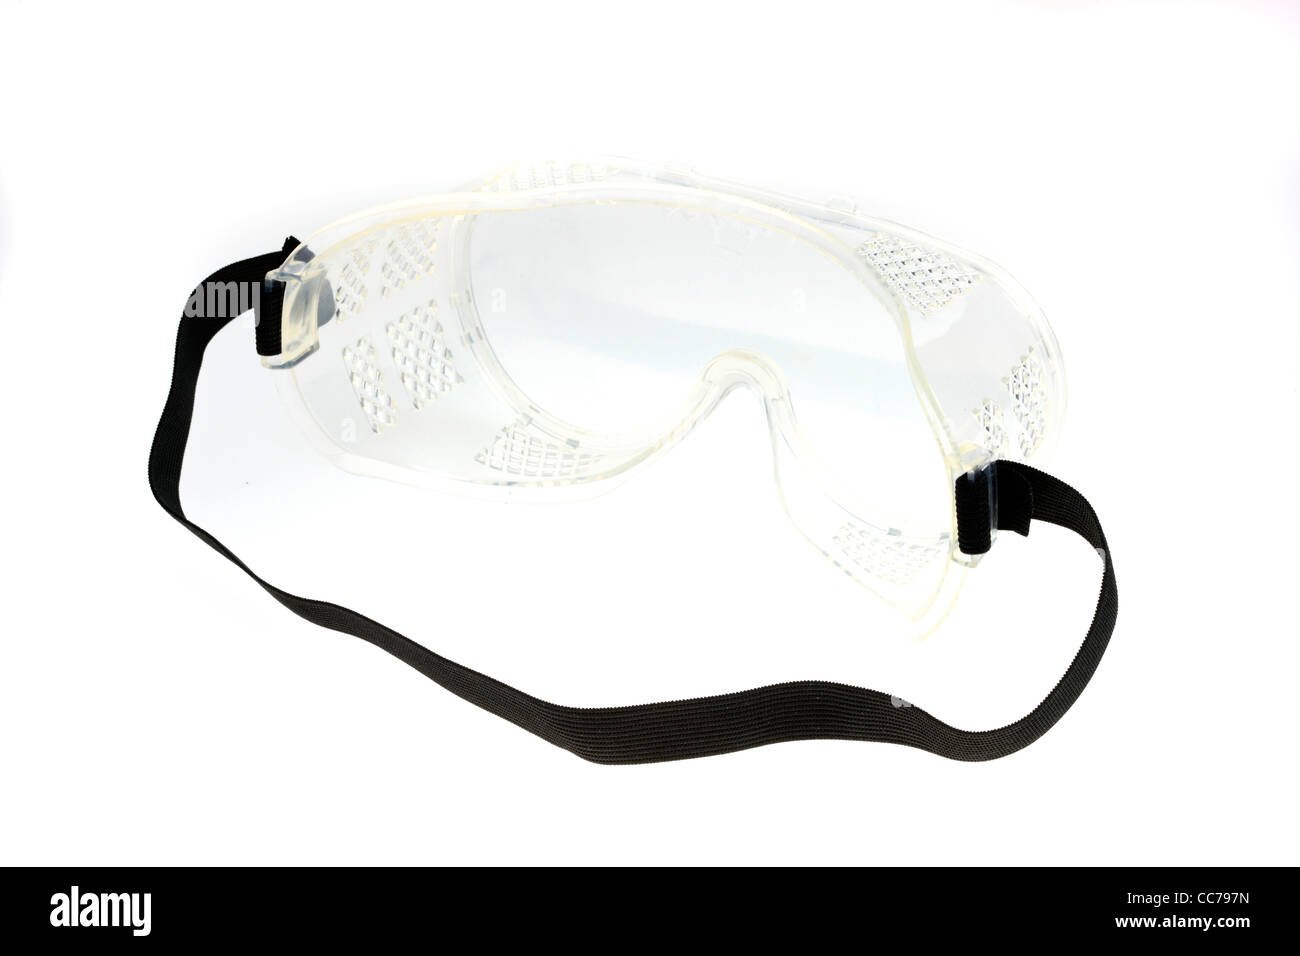 Equipo de protección personal, gafas de seguridad, gafas de seguridad, un par de gafas. Foto de stock